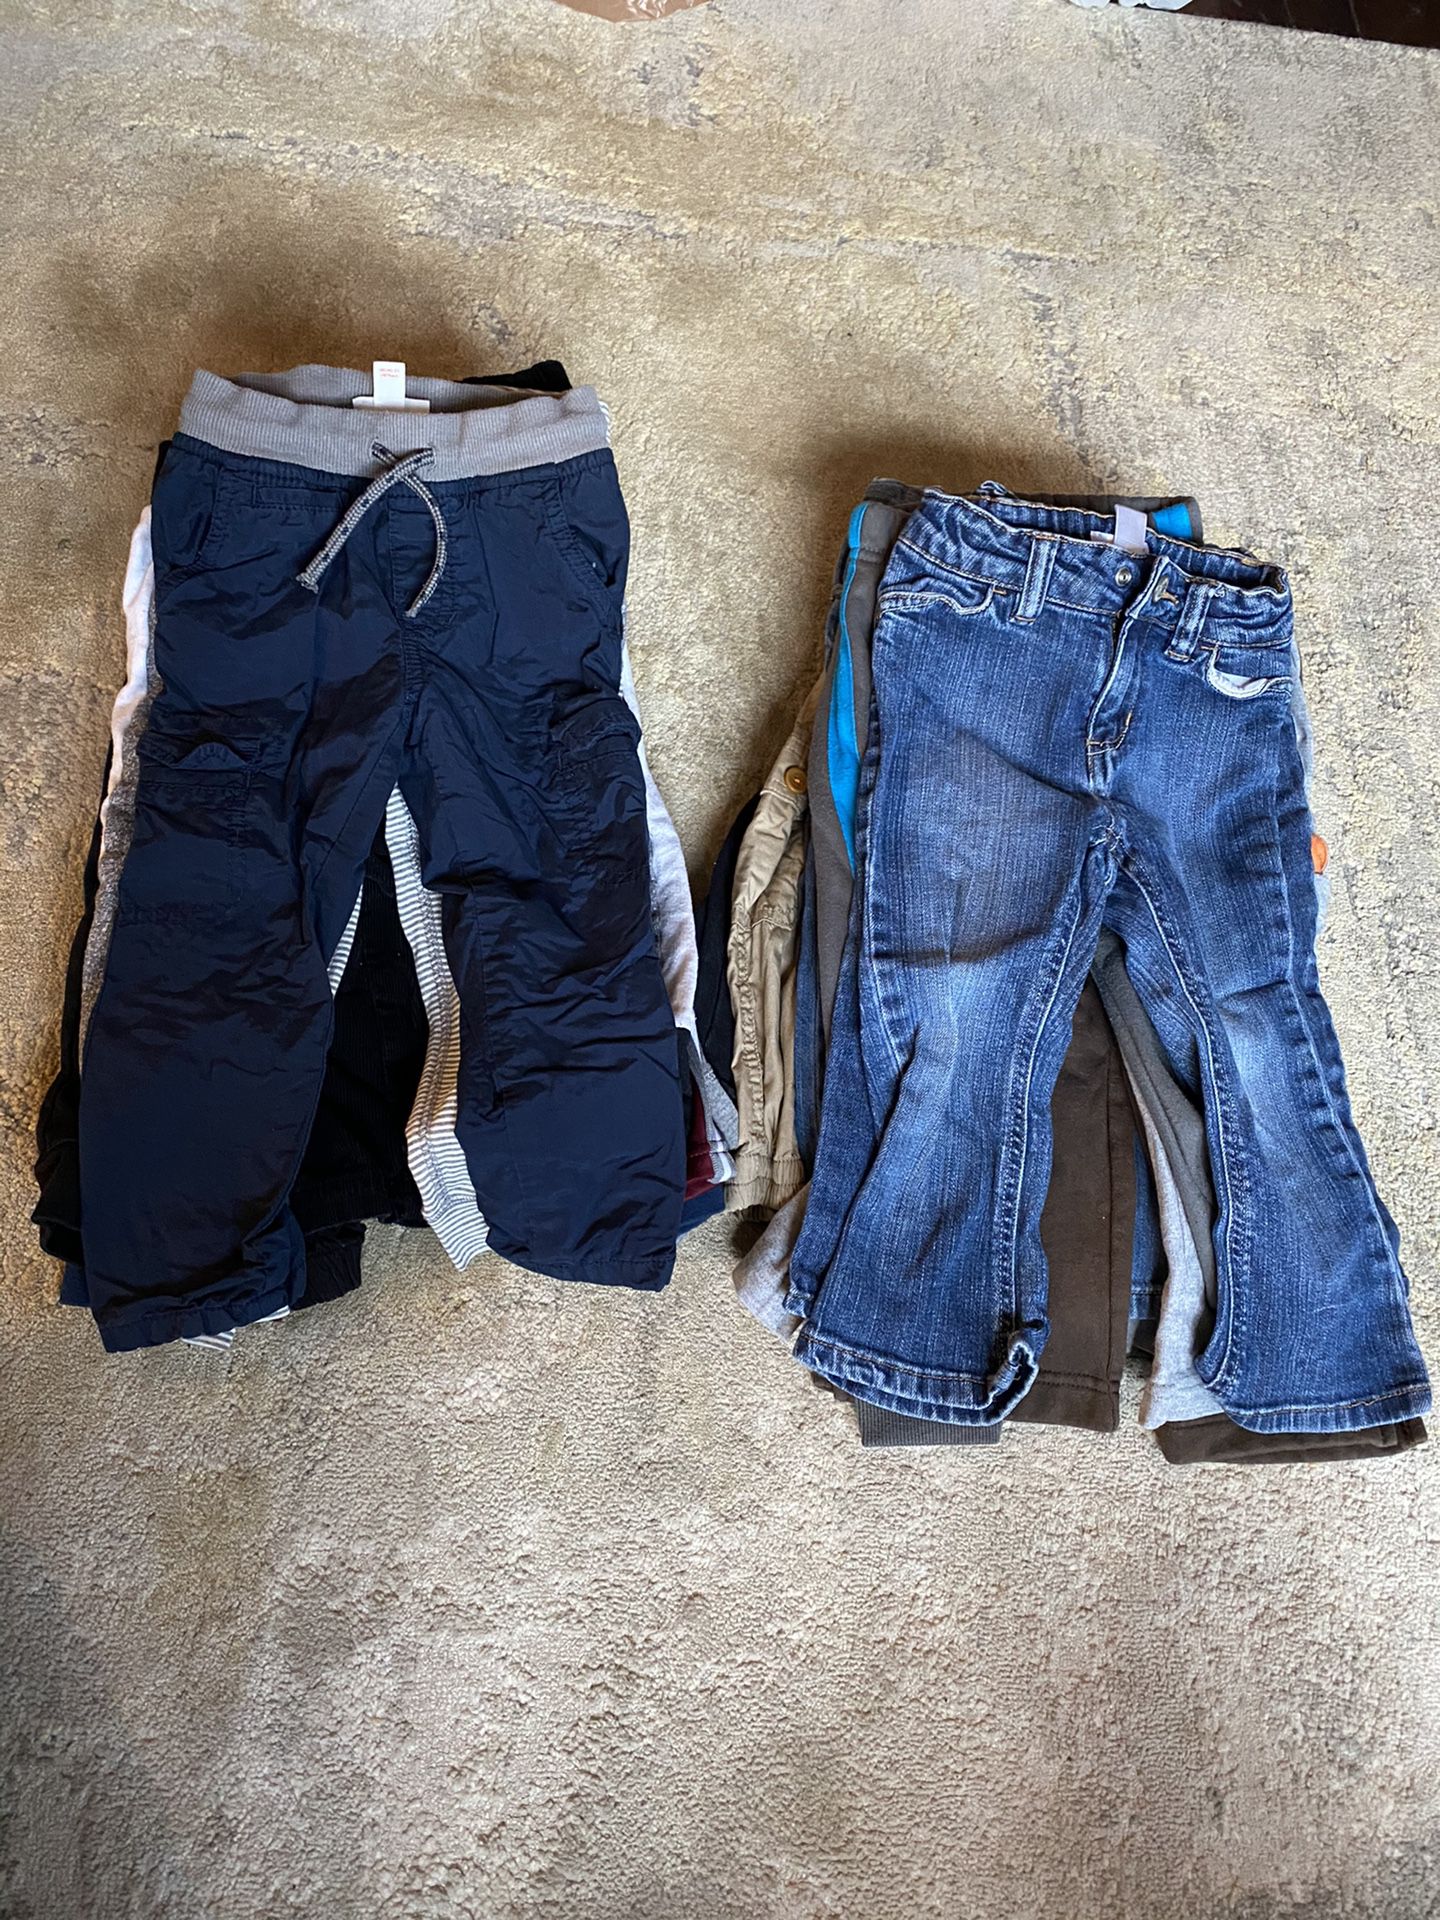 Boys Pants 24 Months, 2T Clothes